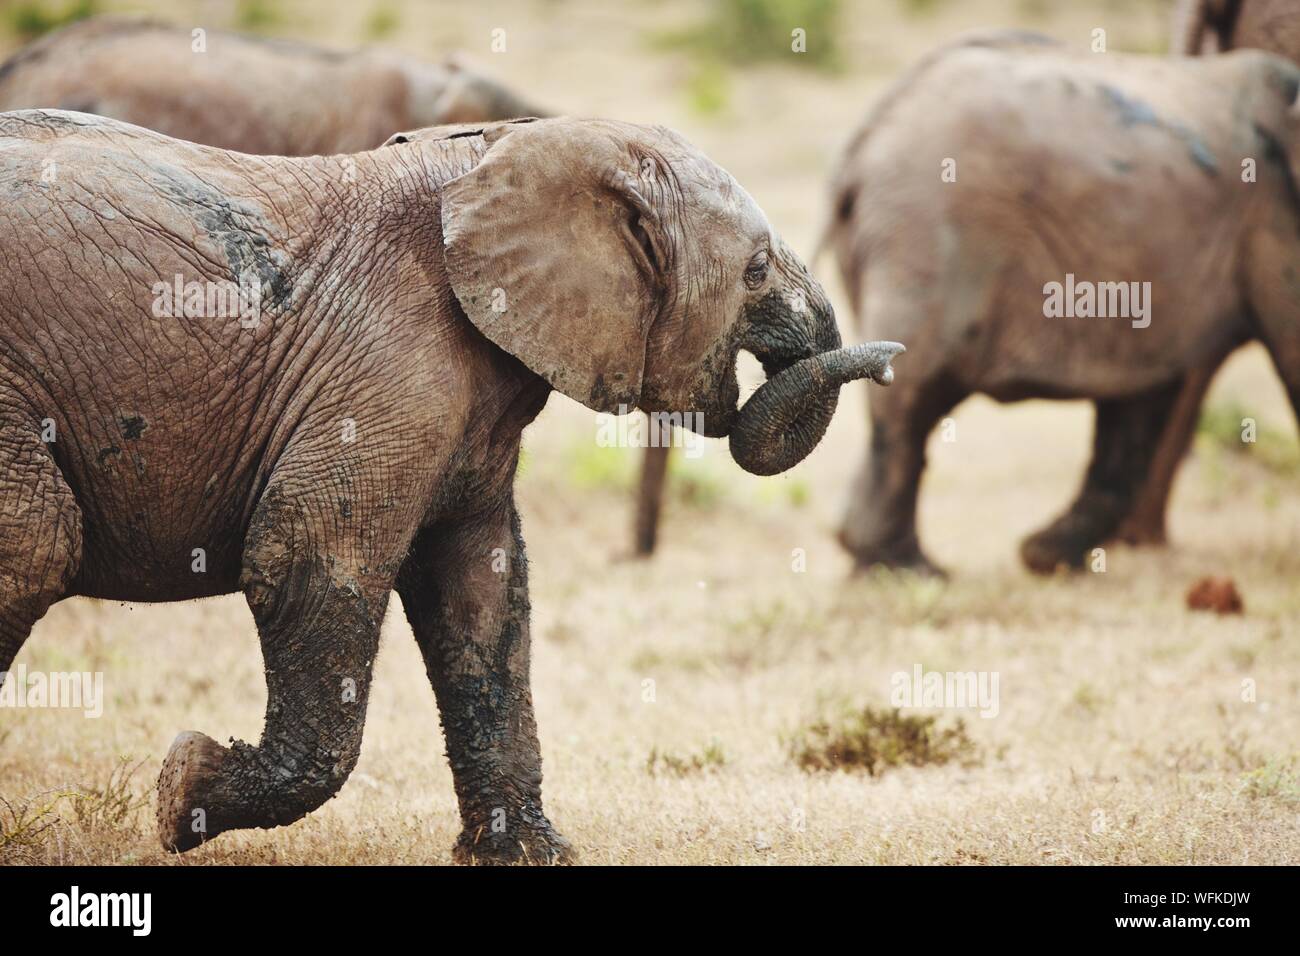 Elephants Walking On Grassy Field Stock Photo